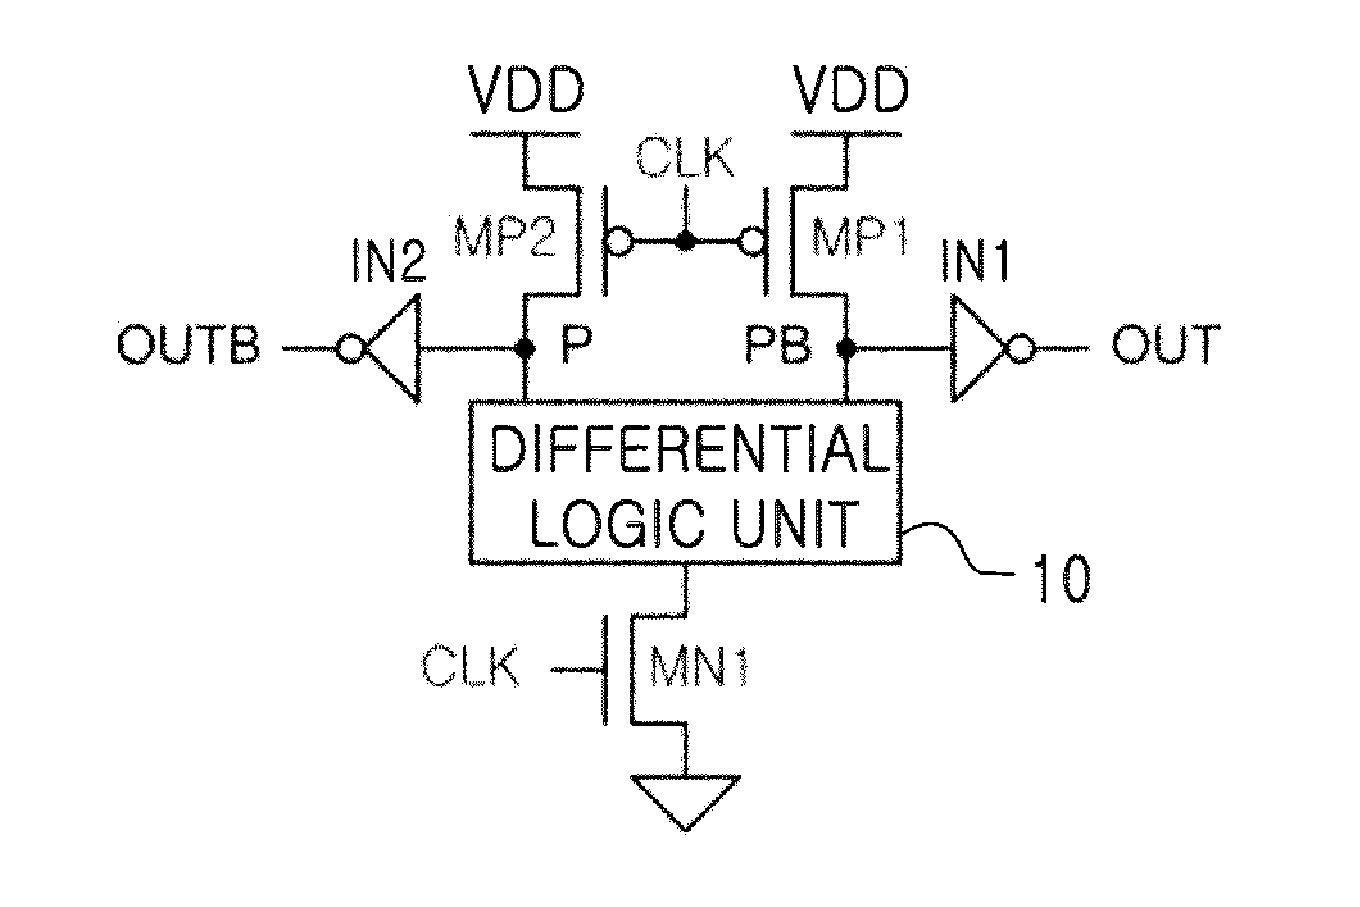 CMOS differential logic circuit using voltage boosting technique